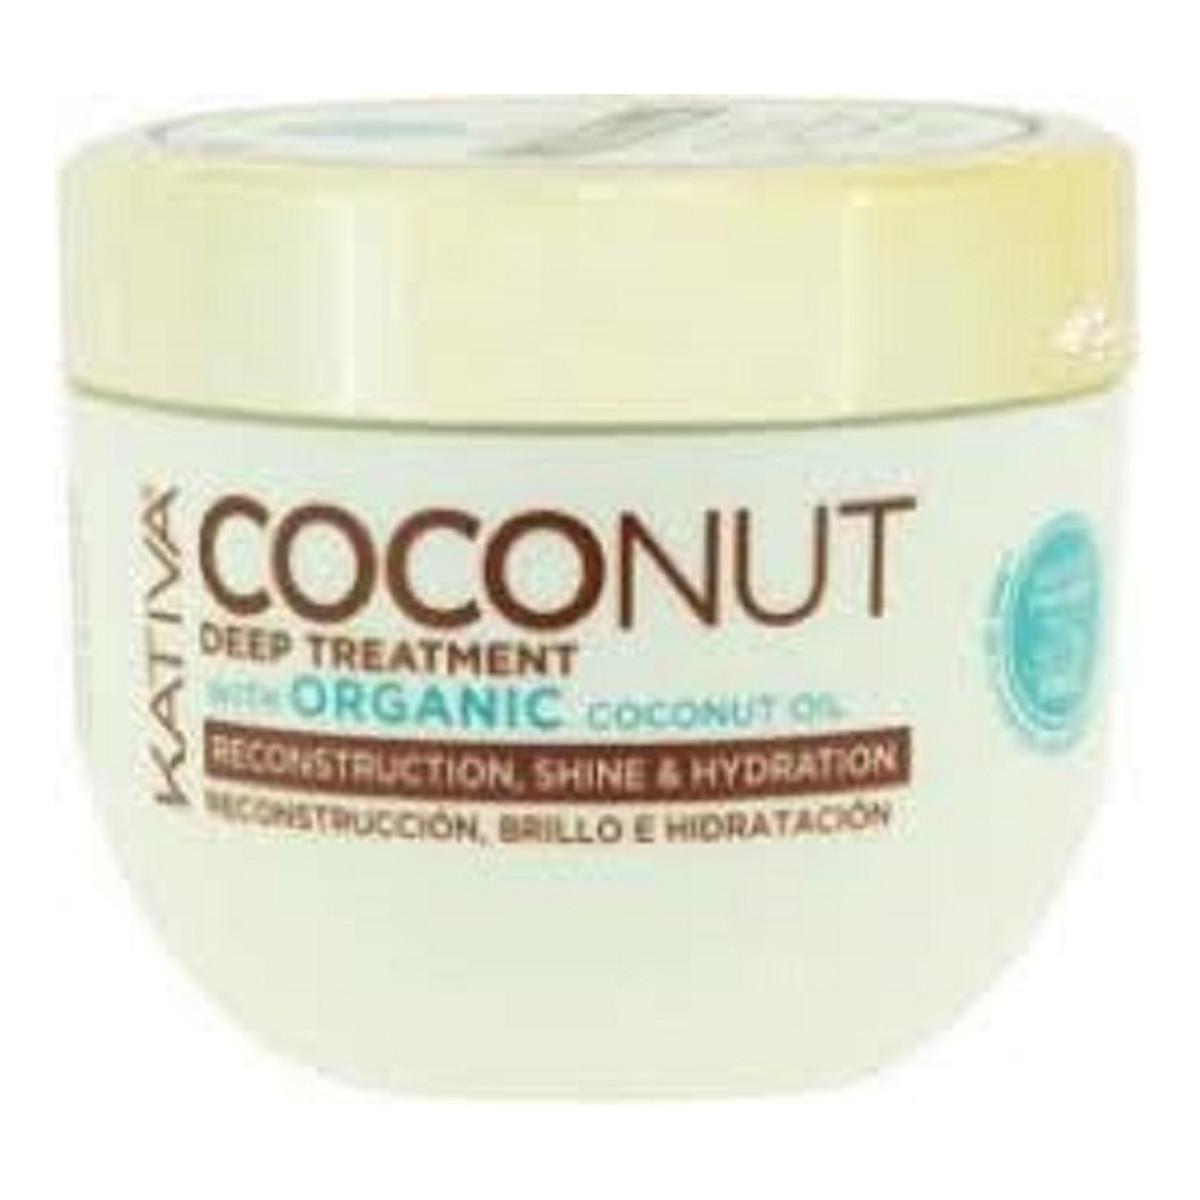 Kativa Coconut deep treatment kokosowa maska do włosów odbudowująca i nadająca połysku 250ml